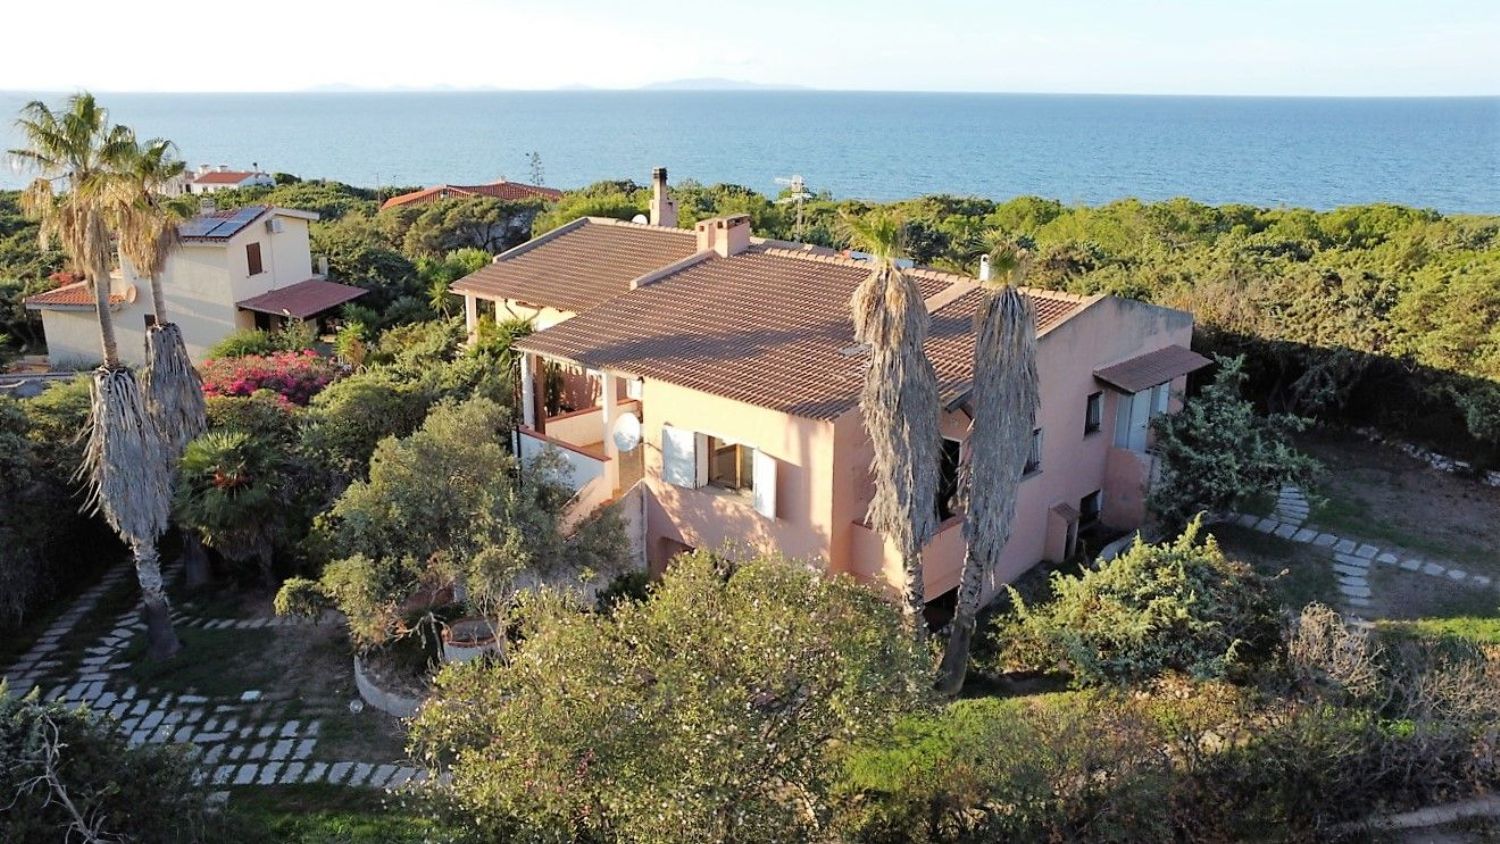 Villa in vendita in eden beach 0, Sorso